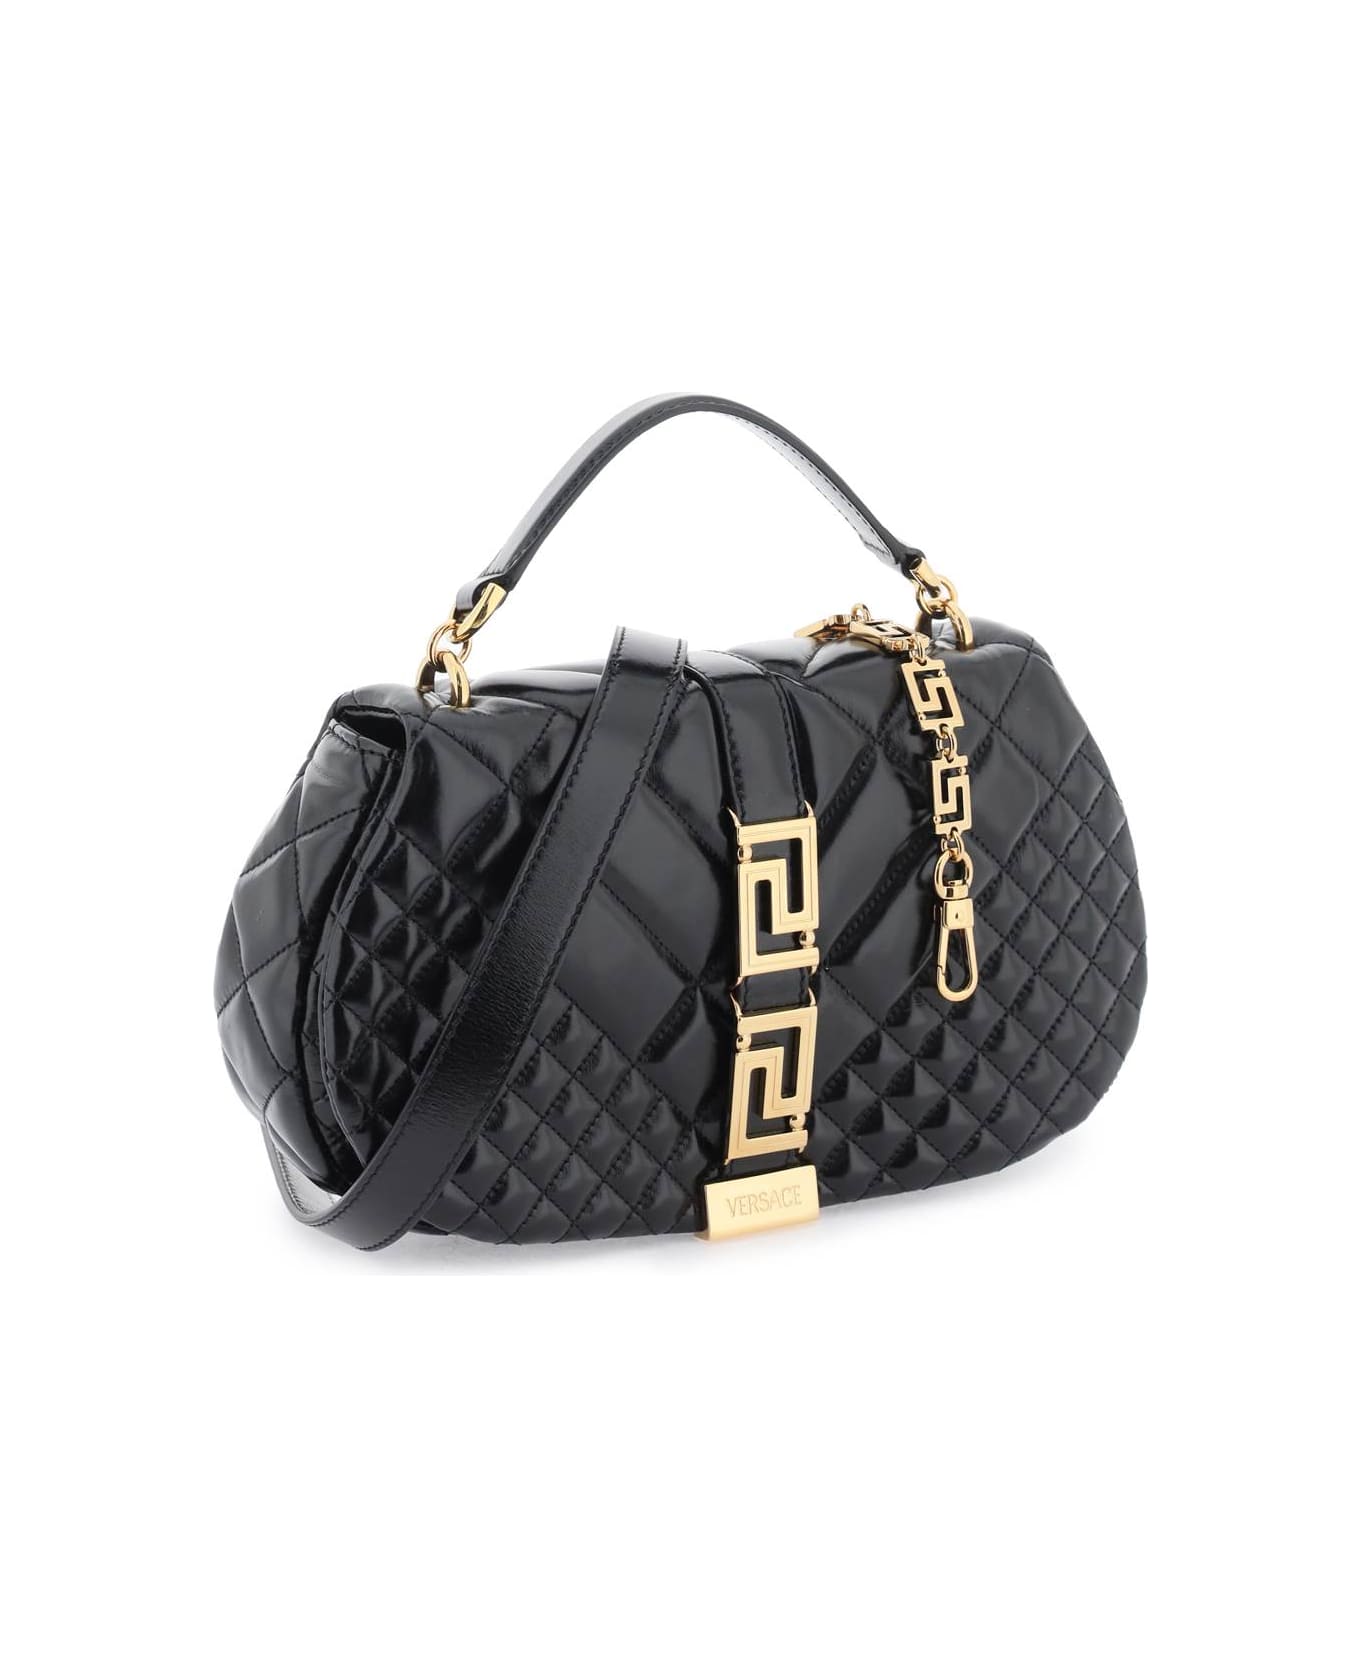 Versace 'greca Goddess' Shoulder Bag - BLACK VERSACE GOLD (Black) トートバッグ